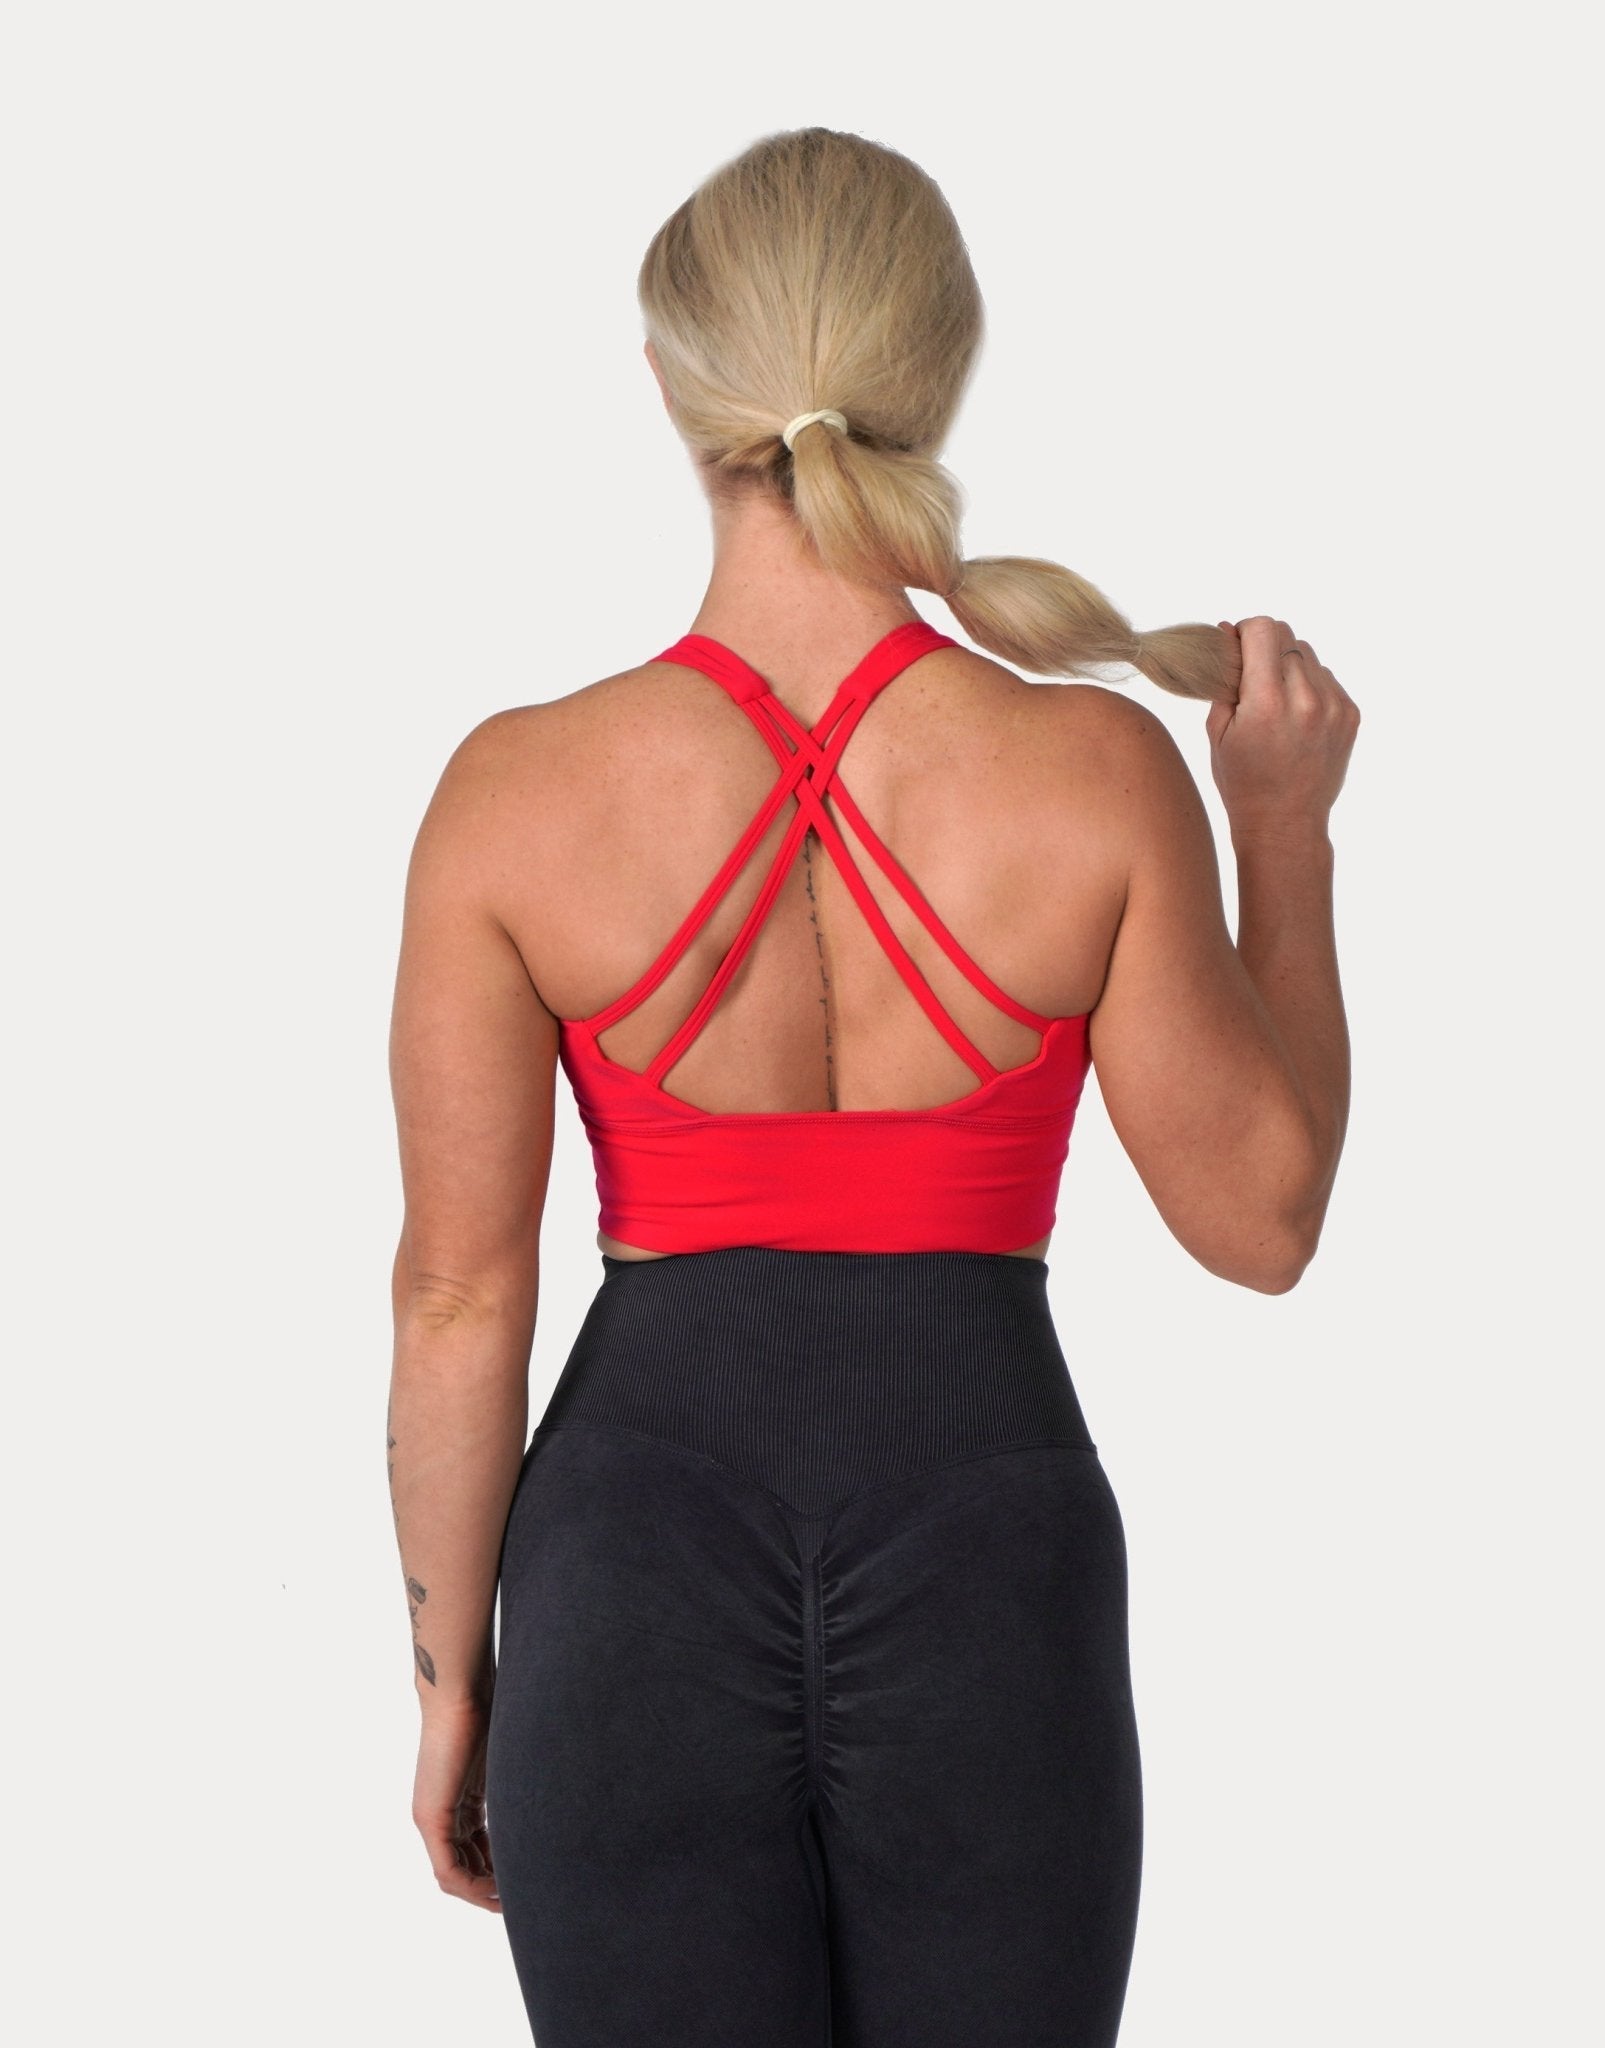 nsendm Female Underwear Adult Sweat Vest Waist Trainer Women's Sports Bra  Big Chest Small Running Shockproof Gathering No Steel Decree Tops  for(Black